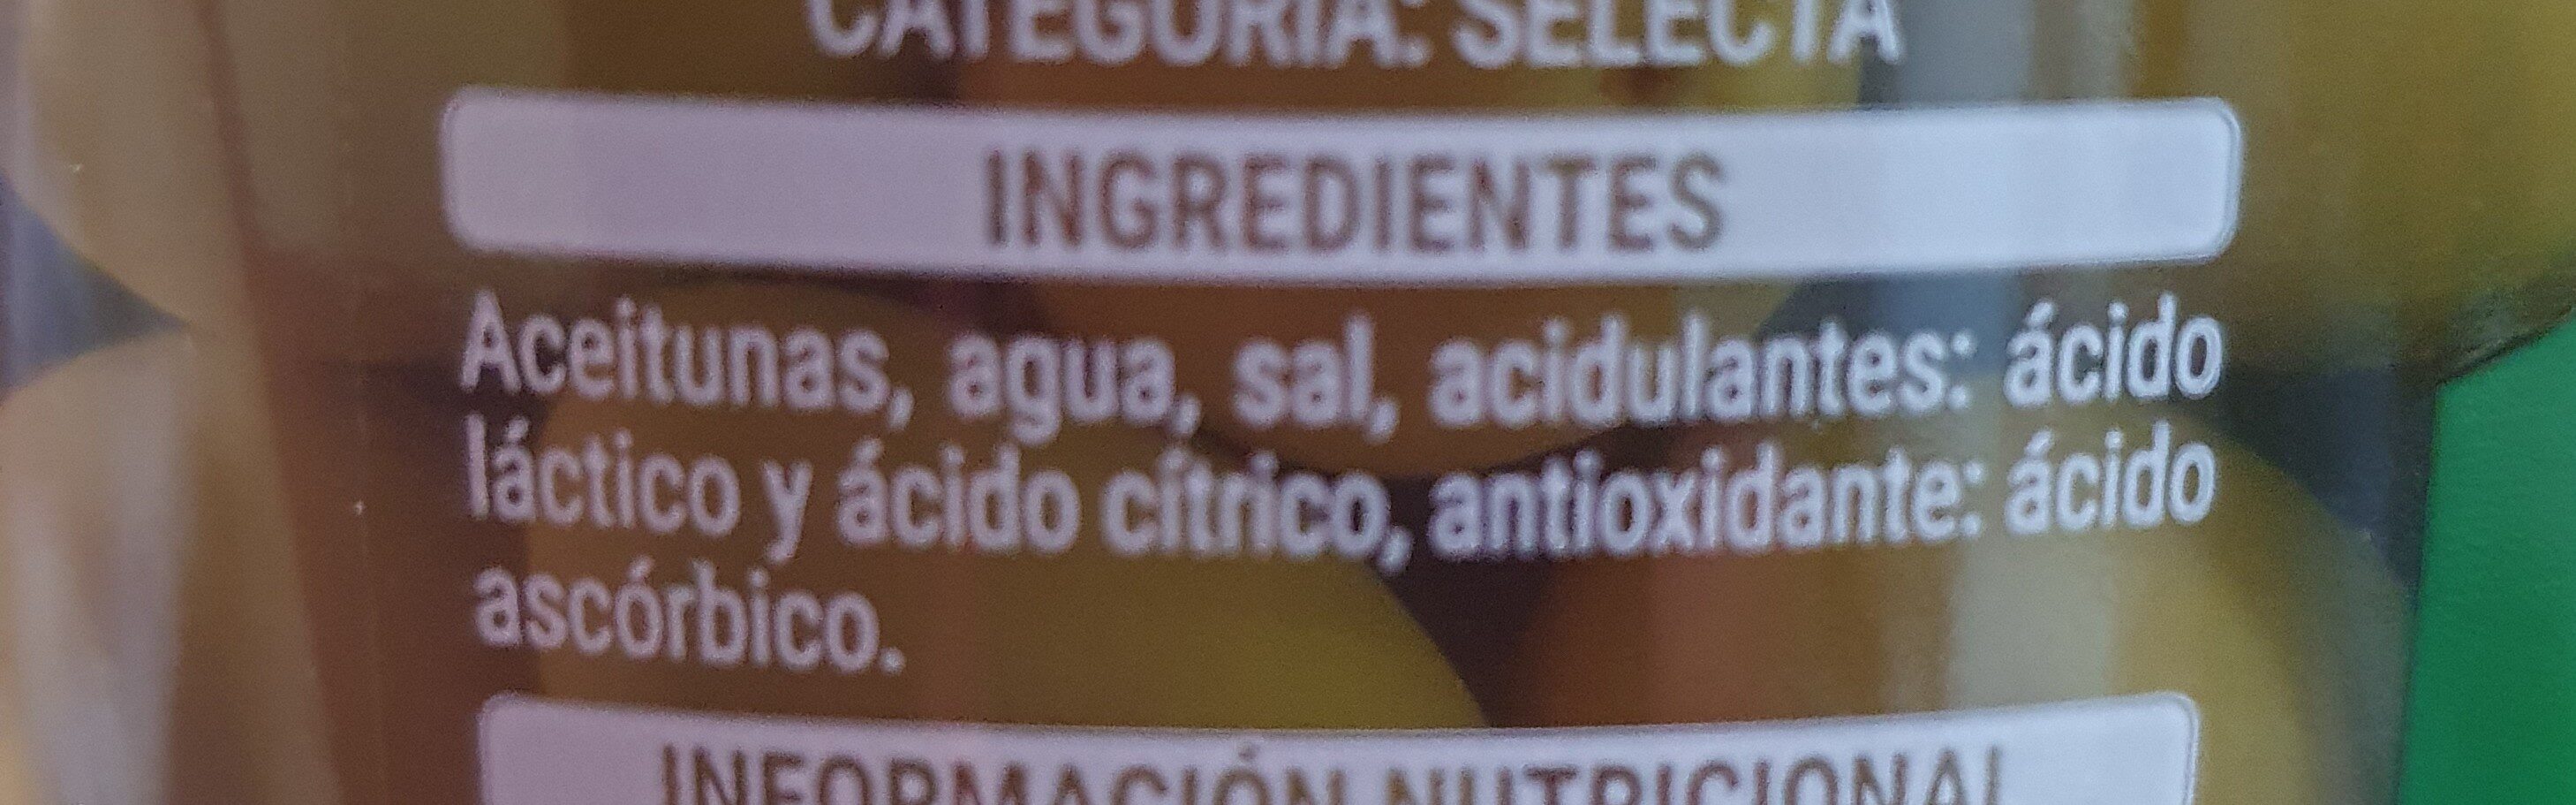 Aceitunas con hueso - Ingredients - es